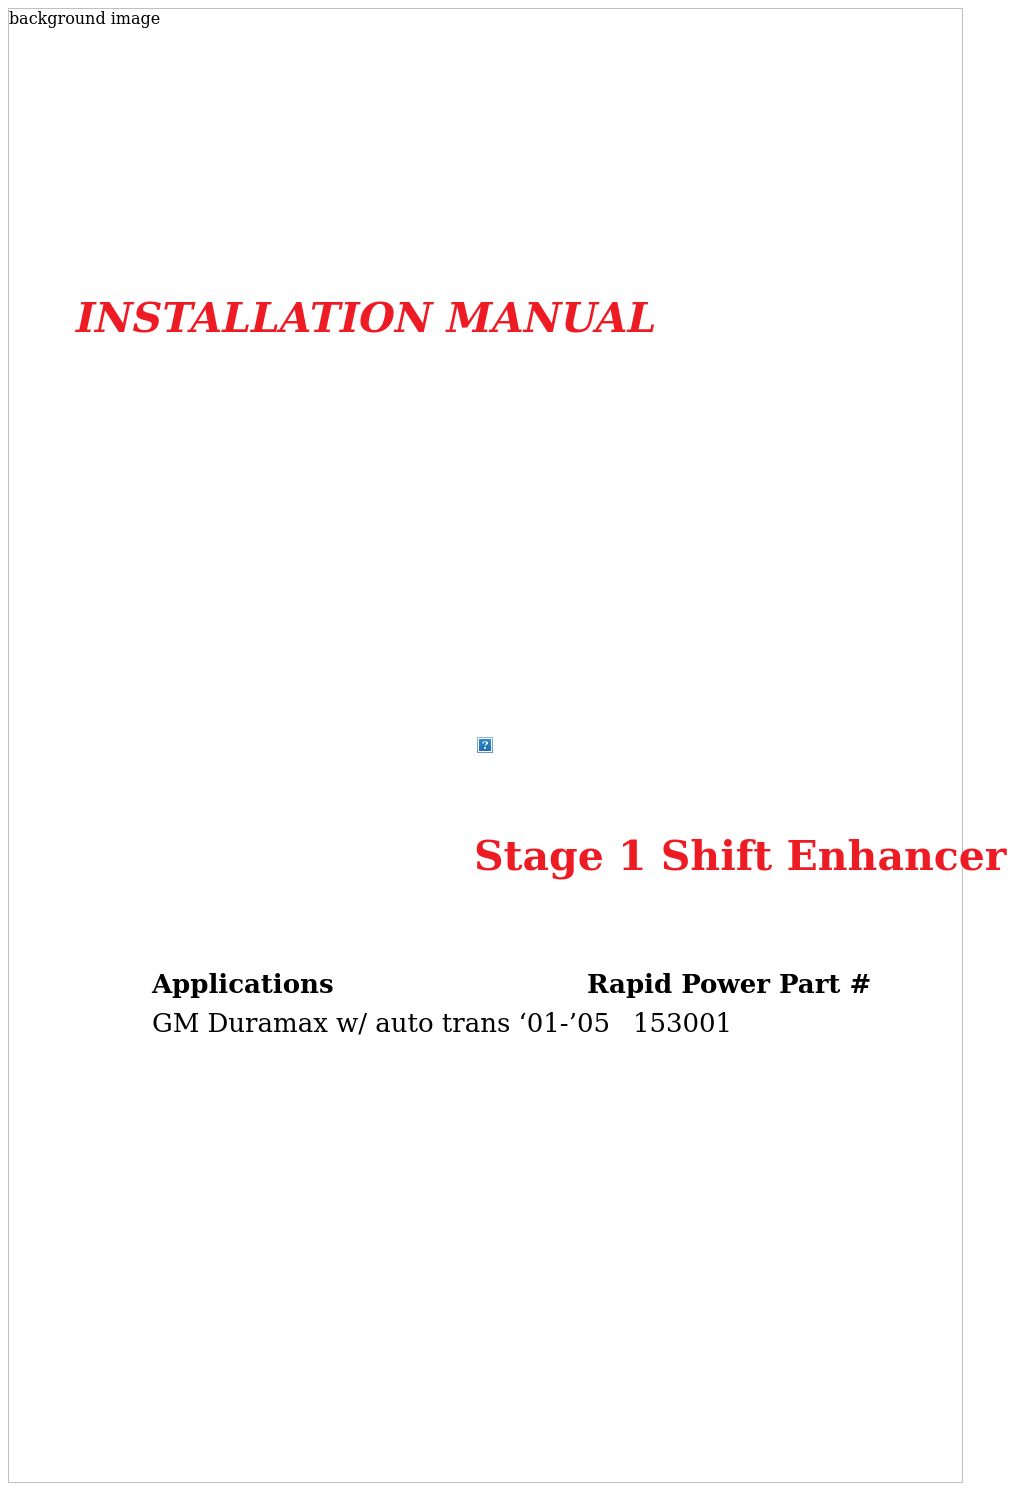 153001 Stage 1 Shift Enhancer